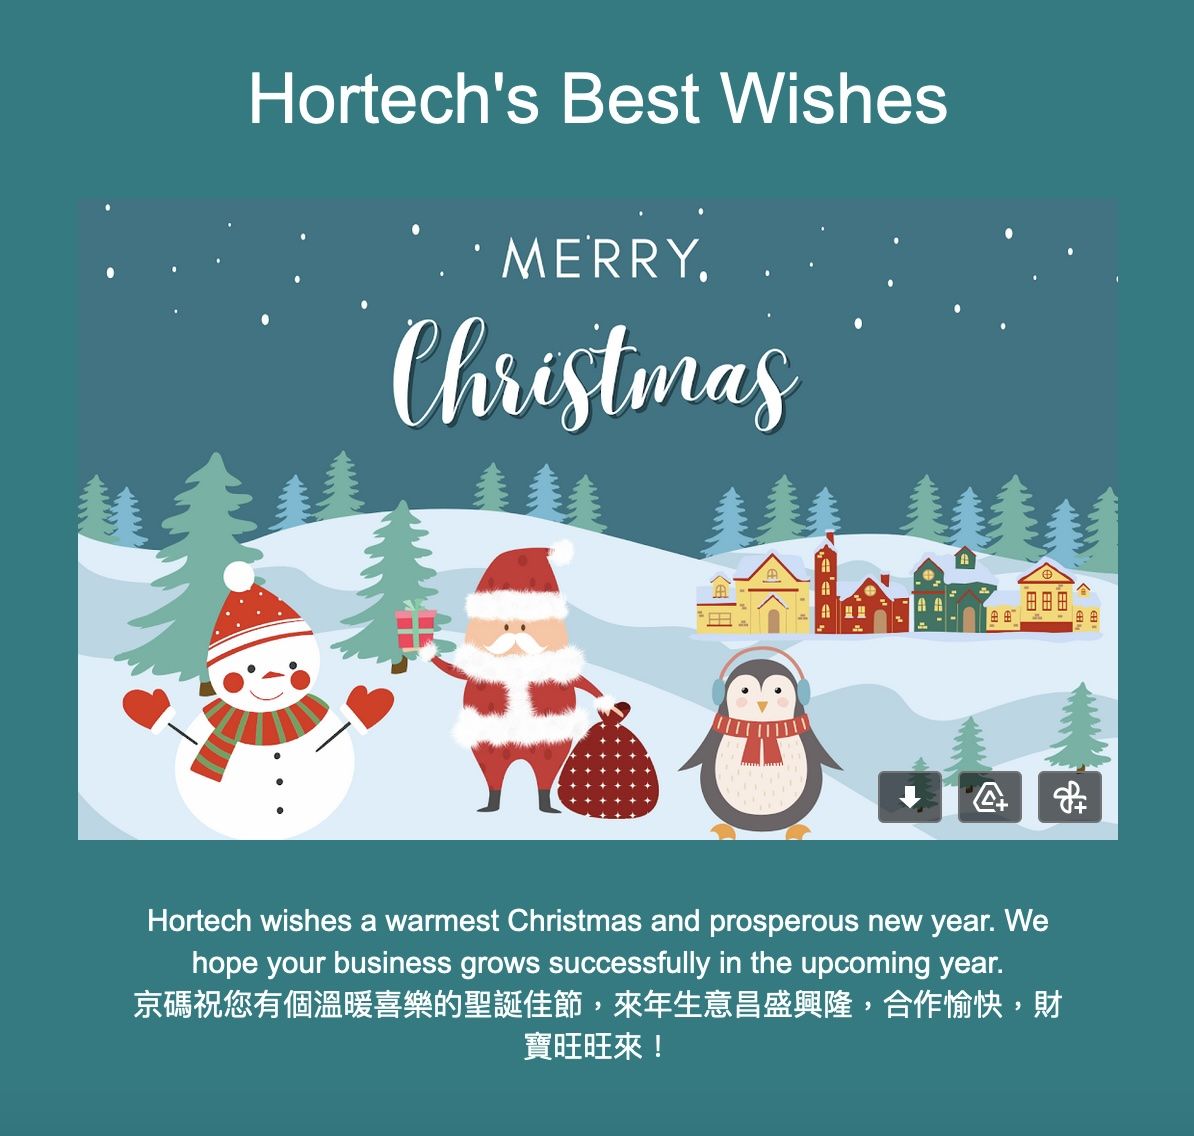 Hortech는 메리 크리스마스와 행복한 새해를 기원합니다.